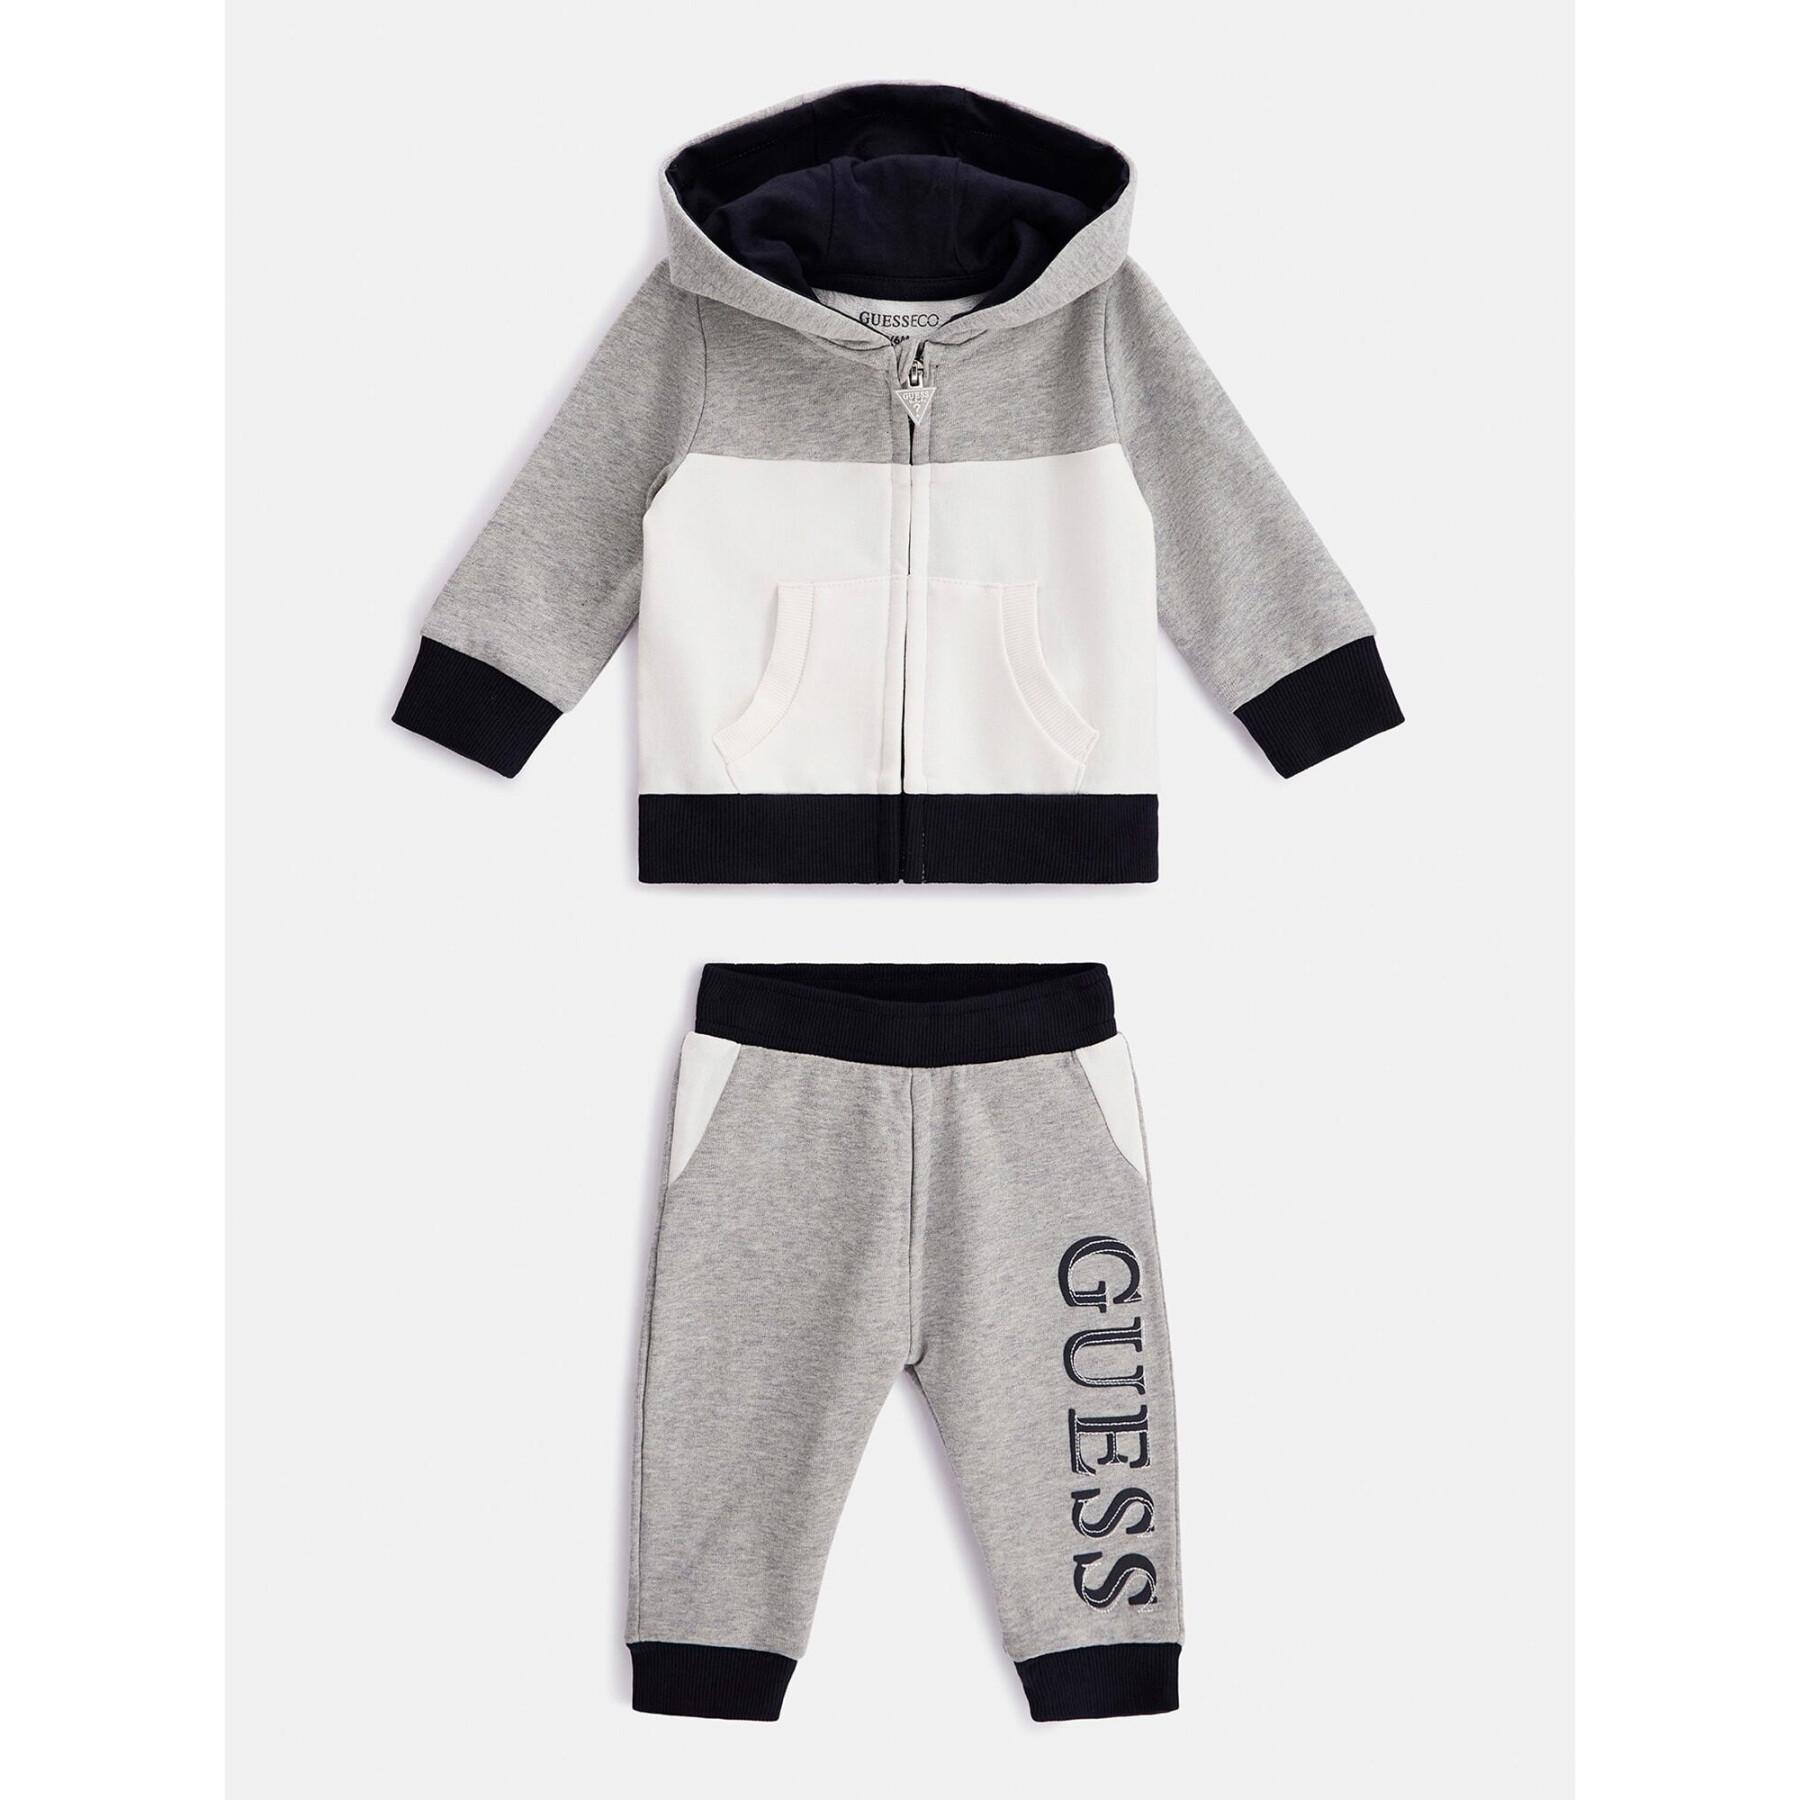 Ustaw sweatshirt à capuche + pantalon bébé garçon Guess Active